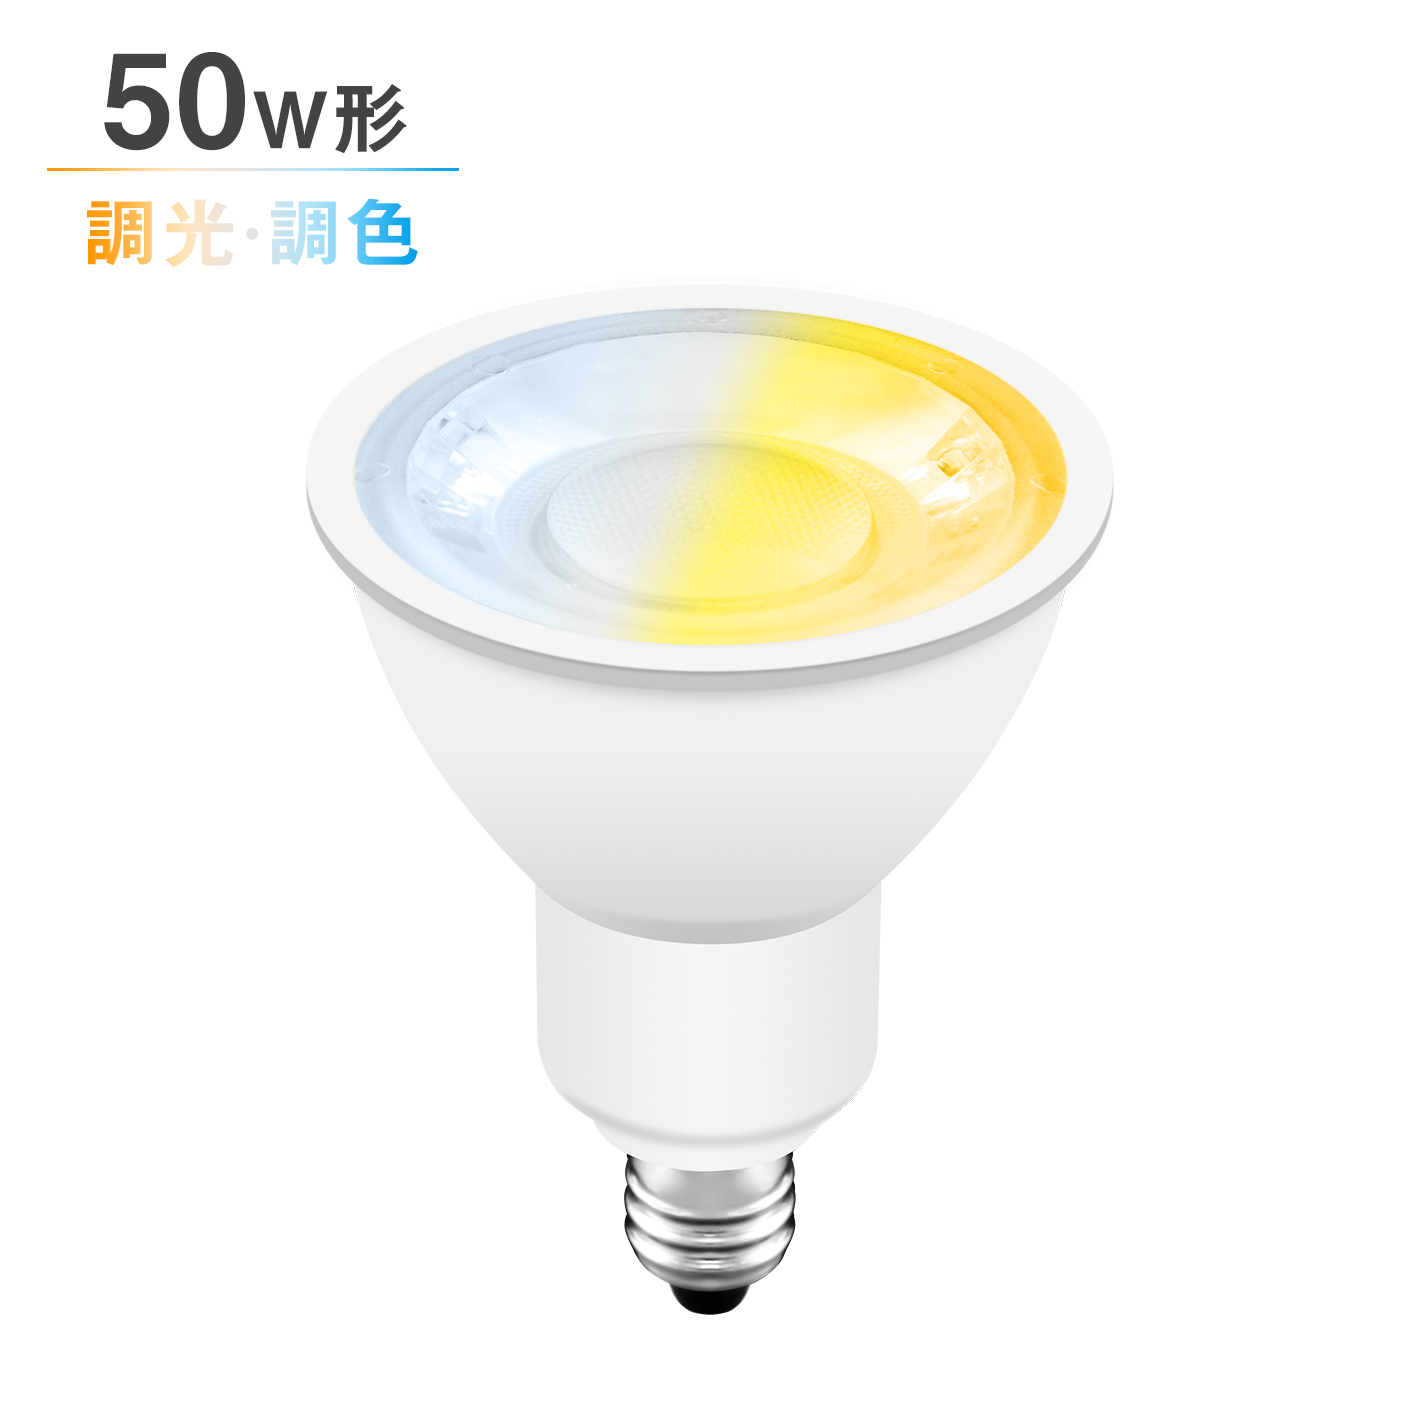 共同照明LED専門店-【GT-SP-6W-E11CT】LEDスポットライト E11 調光調色 50W形 ハロゲン電球 リモコン対応 電球色 昼白色 昼光色